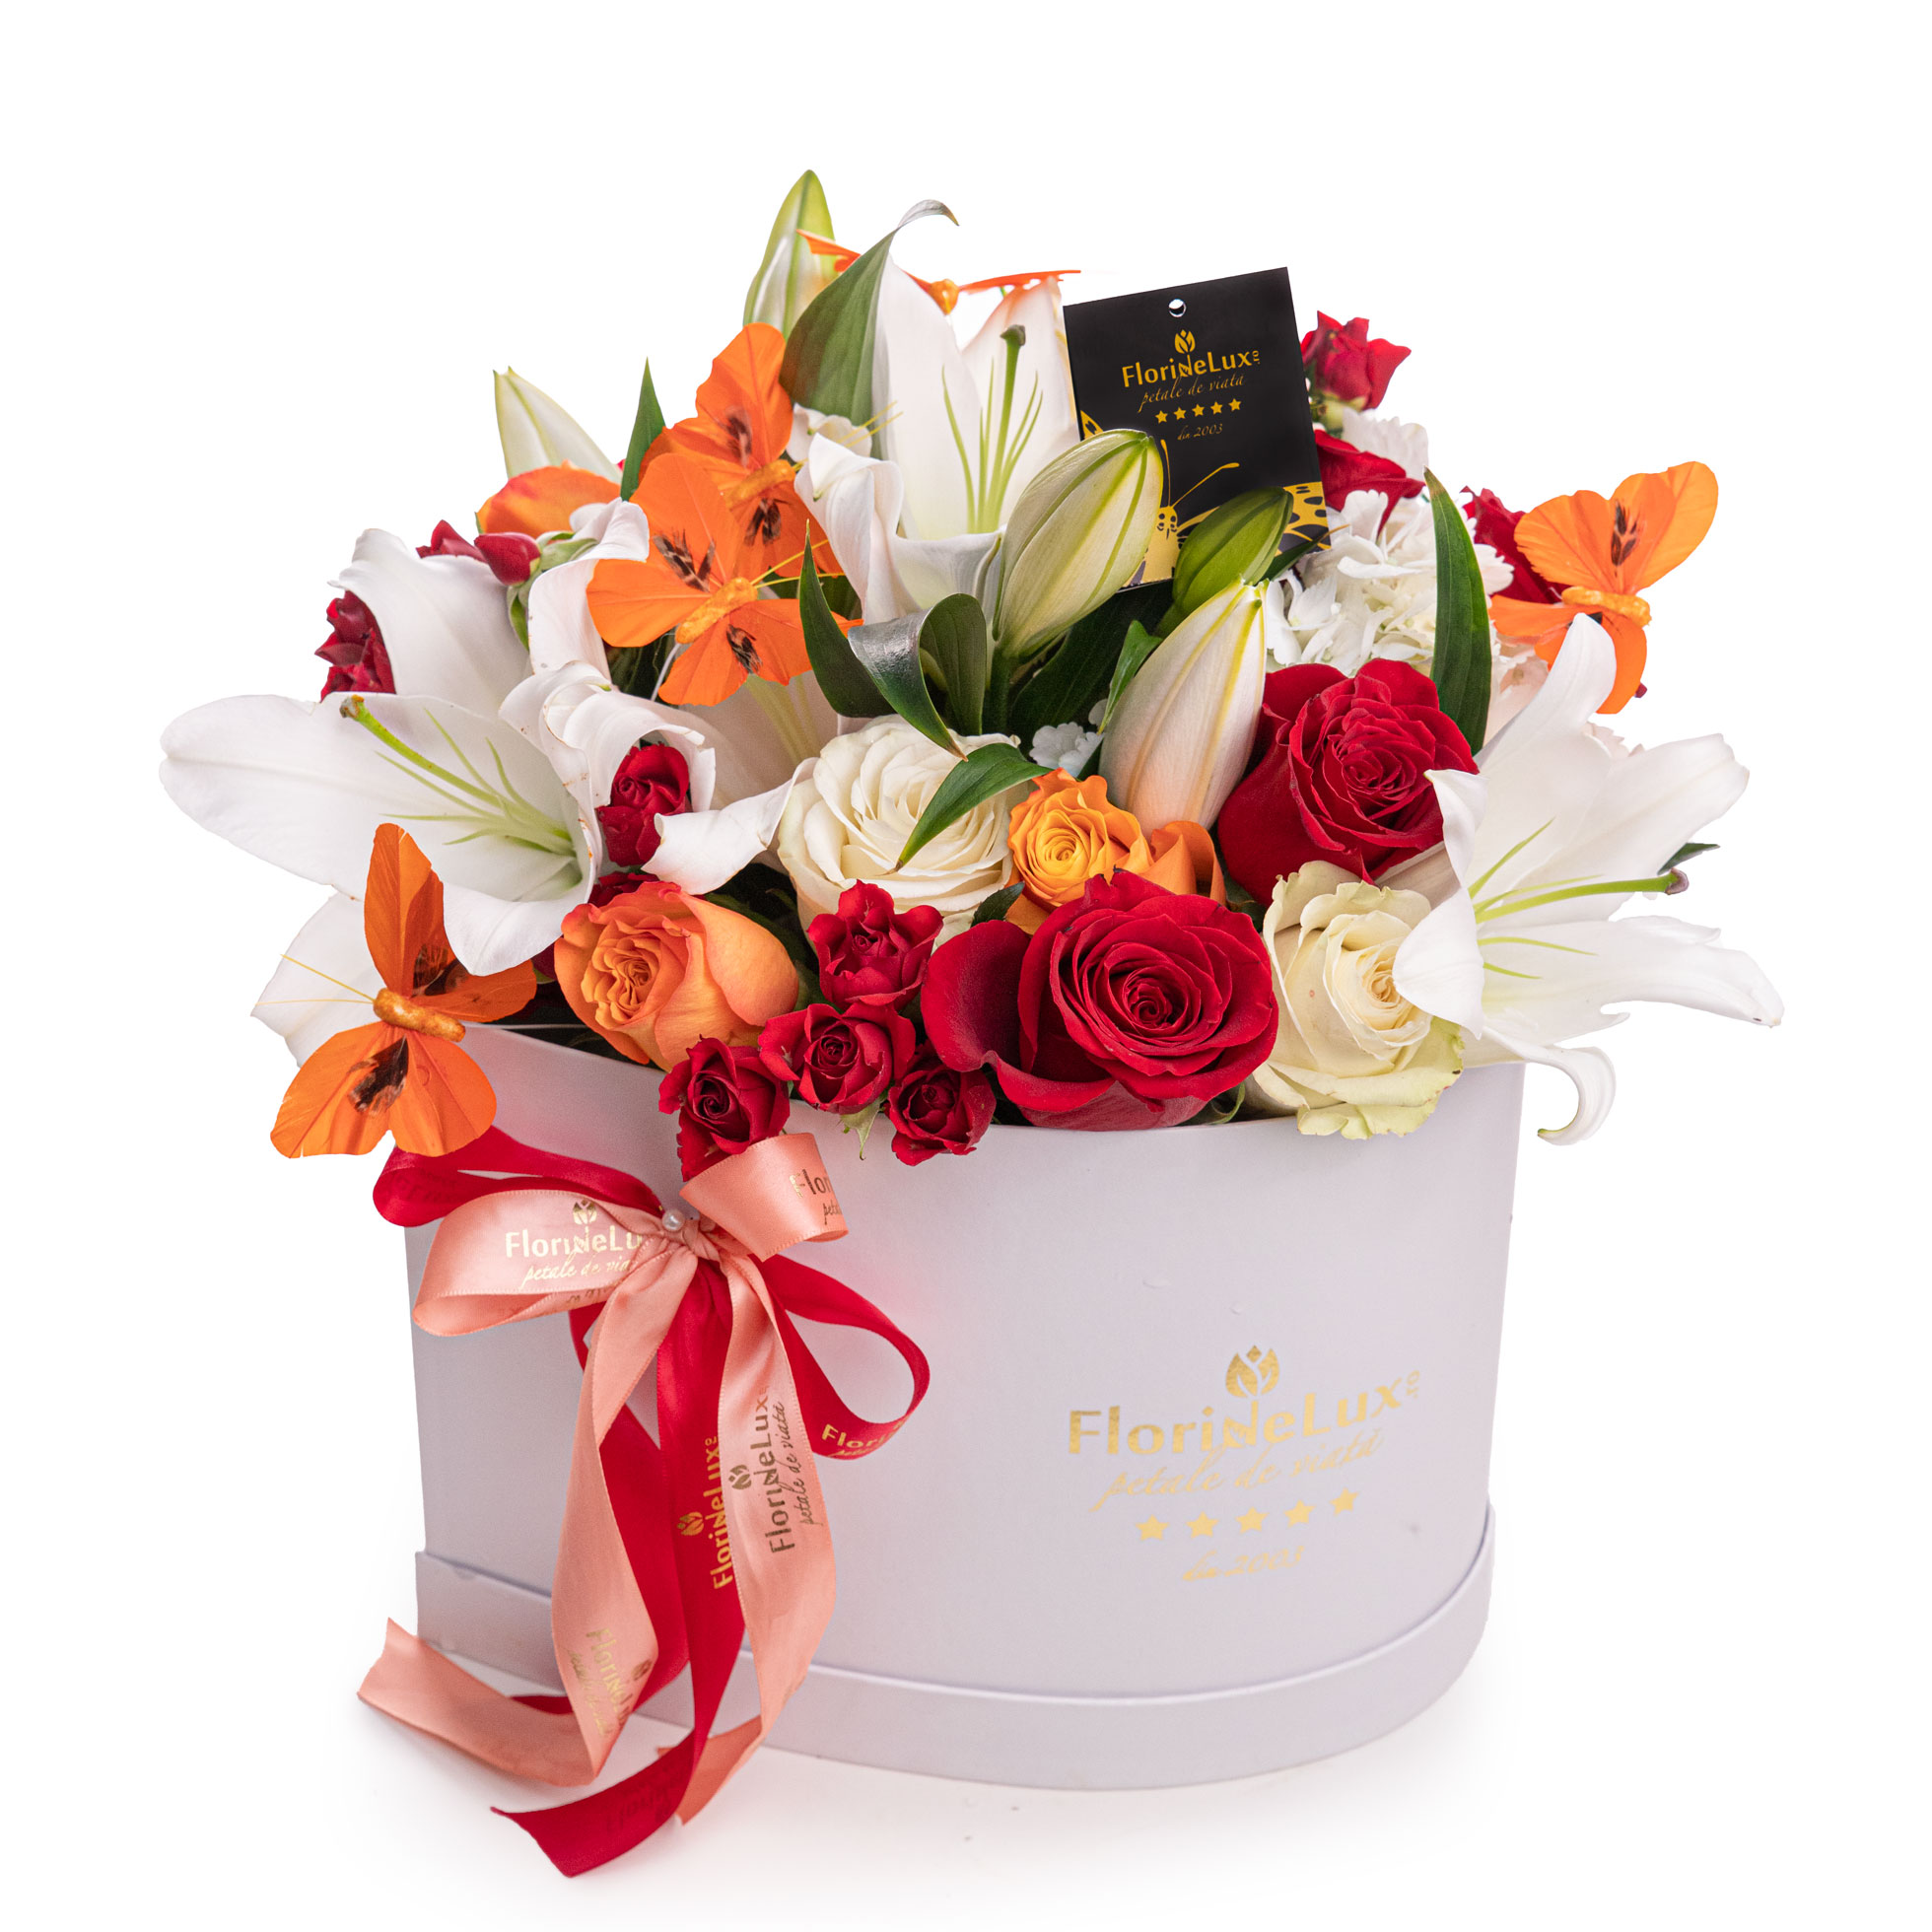 Aranjament floral in cutie cu trandafiri, crini si hortensie